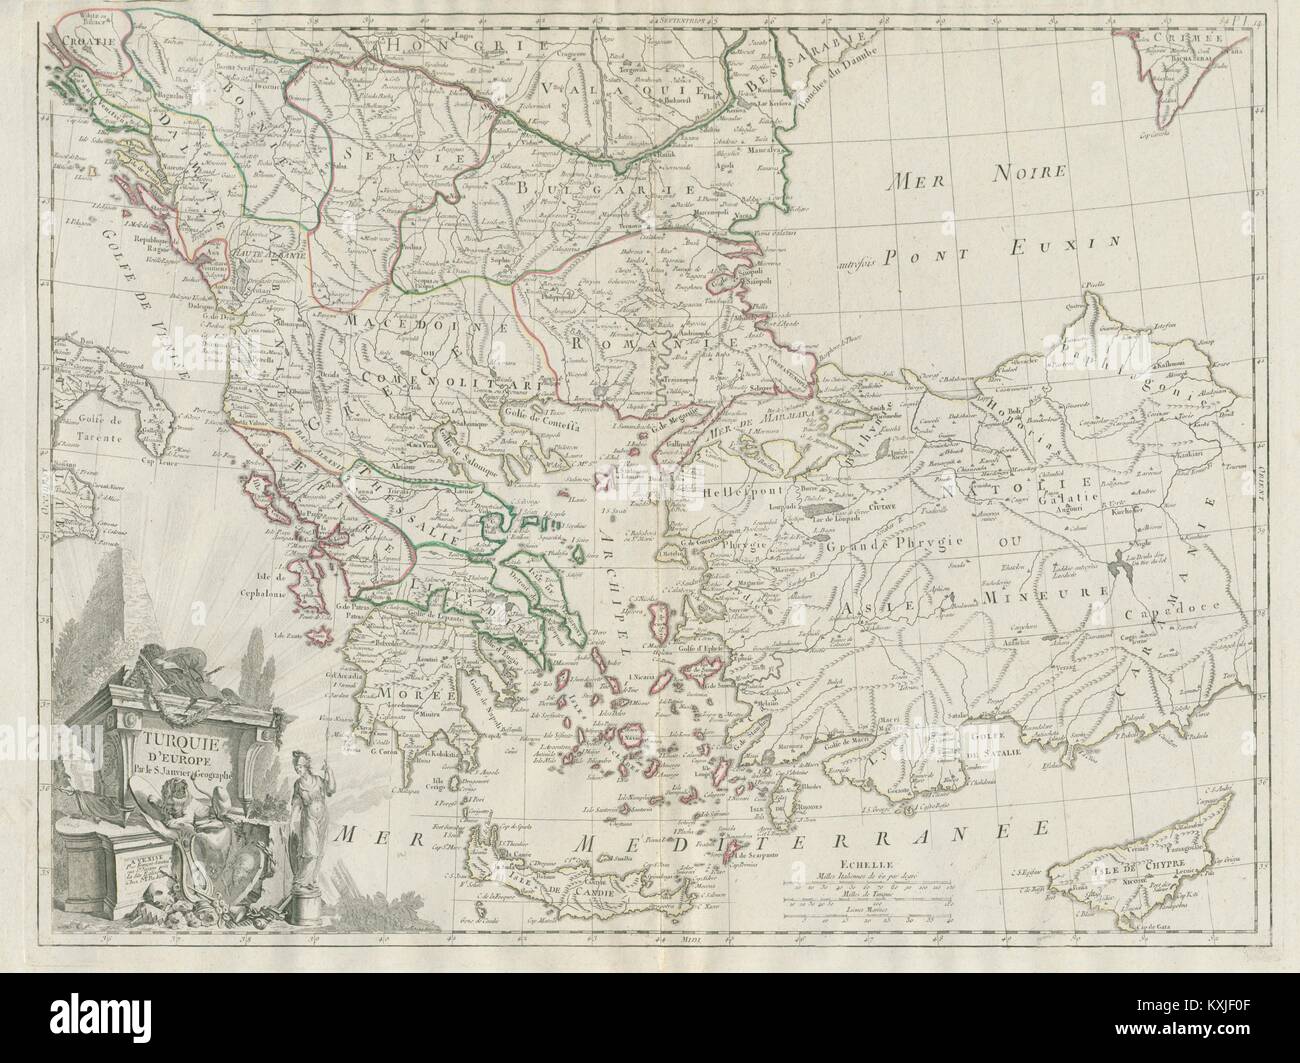 "Turquie d'Europa". Grecia Balcani Anatolia. SANTINI / JANVIER 1784 mappa vecchia Foto Stock